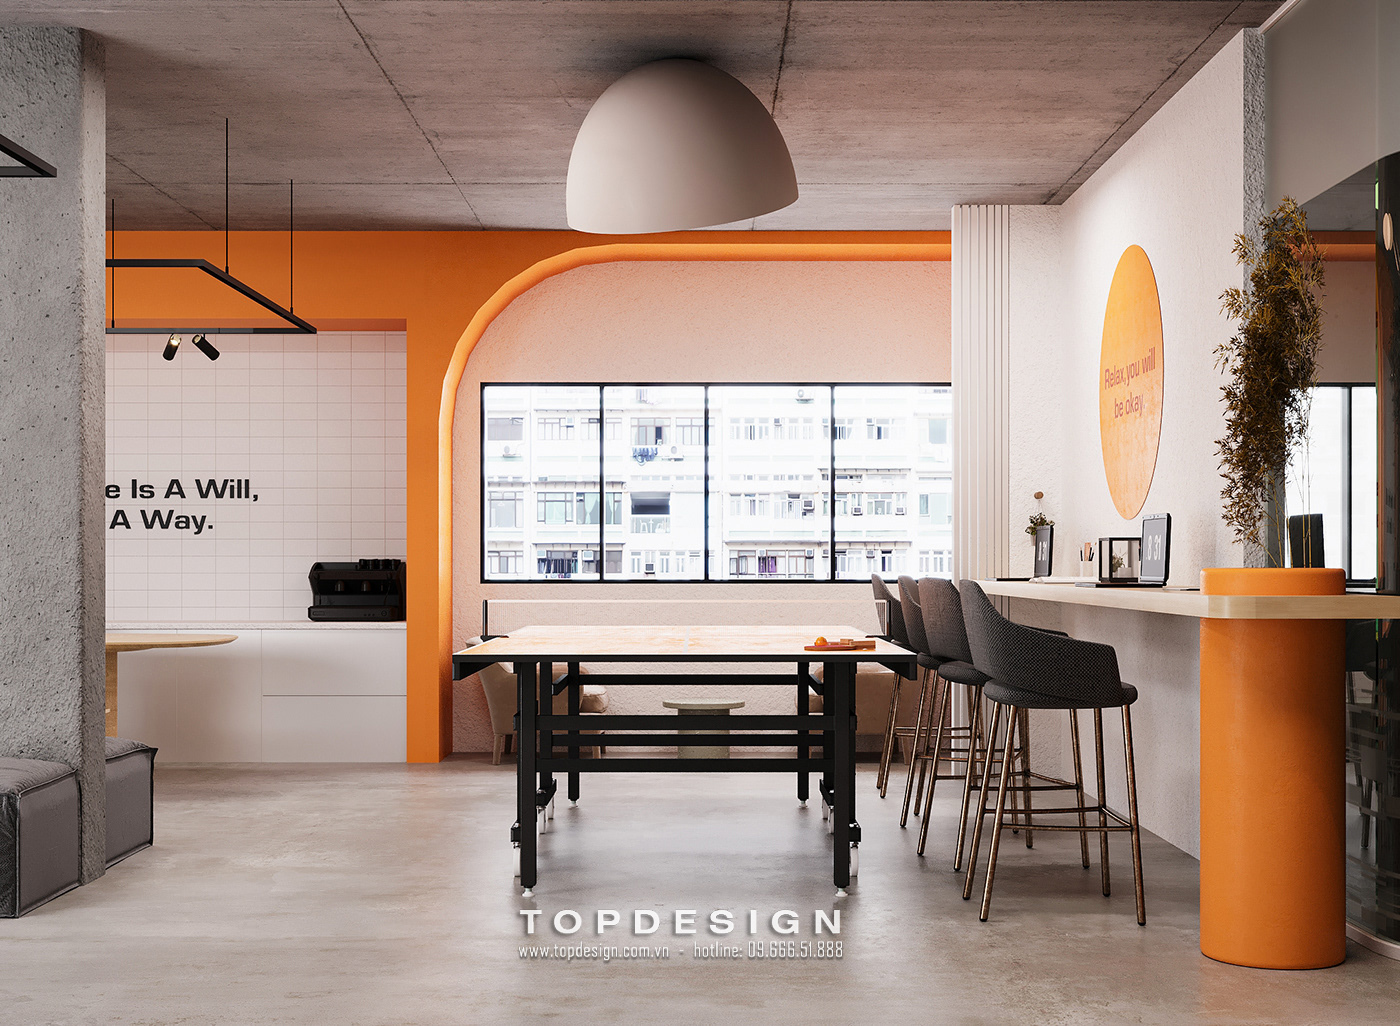 2.mẫu thiết kế decor văn phòng làm việc màu sắc đa dạng, hợp lí_TOPDESIGN